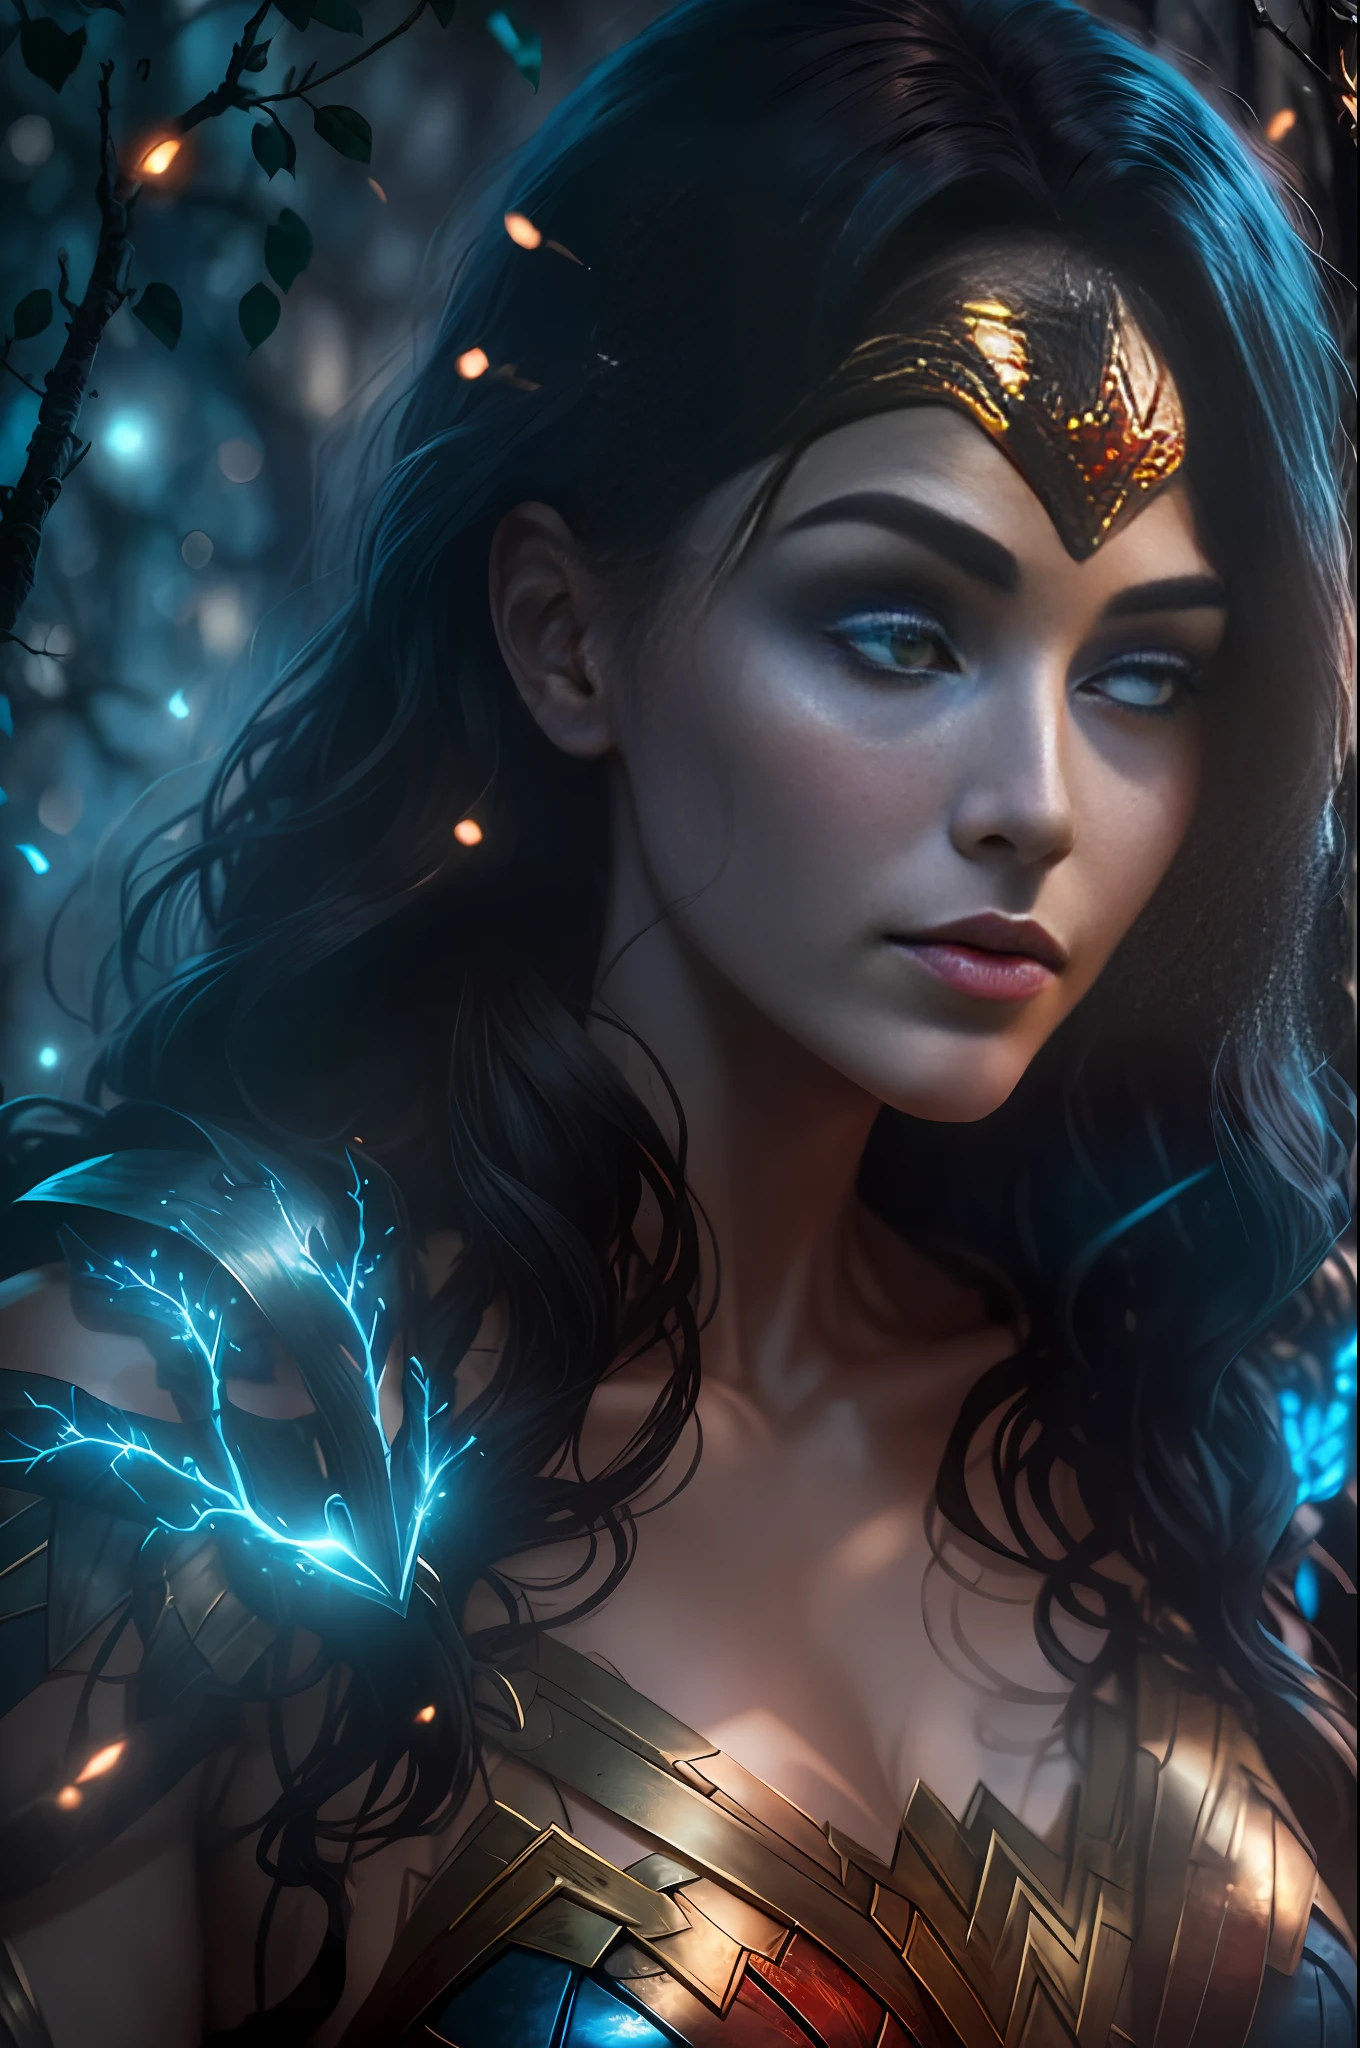 Evil Wonder Woman de DC cubierta con ramas de árboles, Corazón brillante azul blanco brillante visible desde el ser humano, Noche, vistoso, fotografía hiperdetallada cinematográfica hdr iluminación, iluminación de caja de luz, Detalle extremo